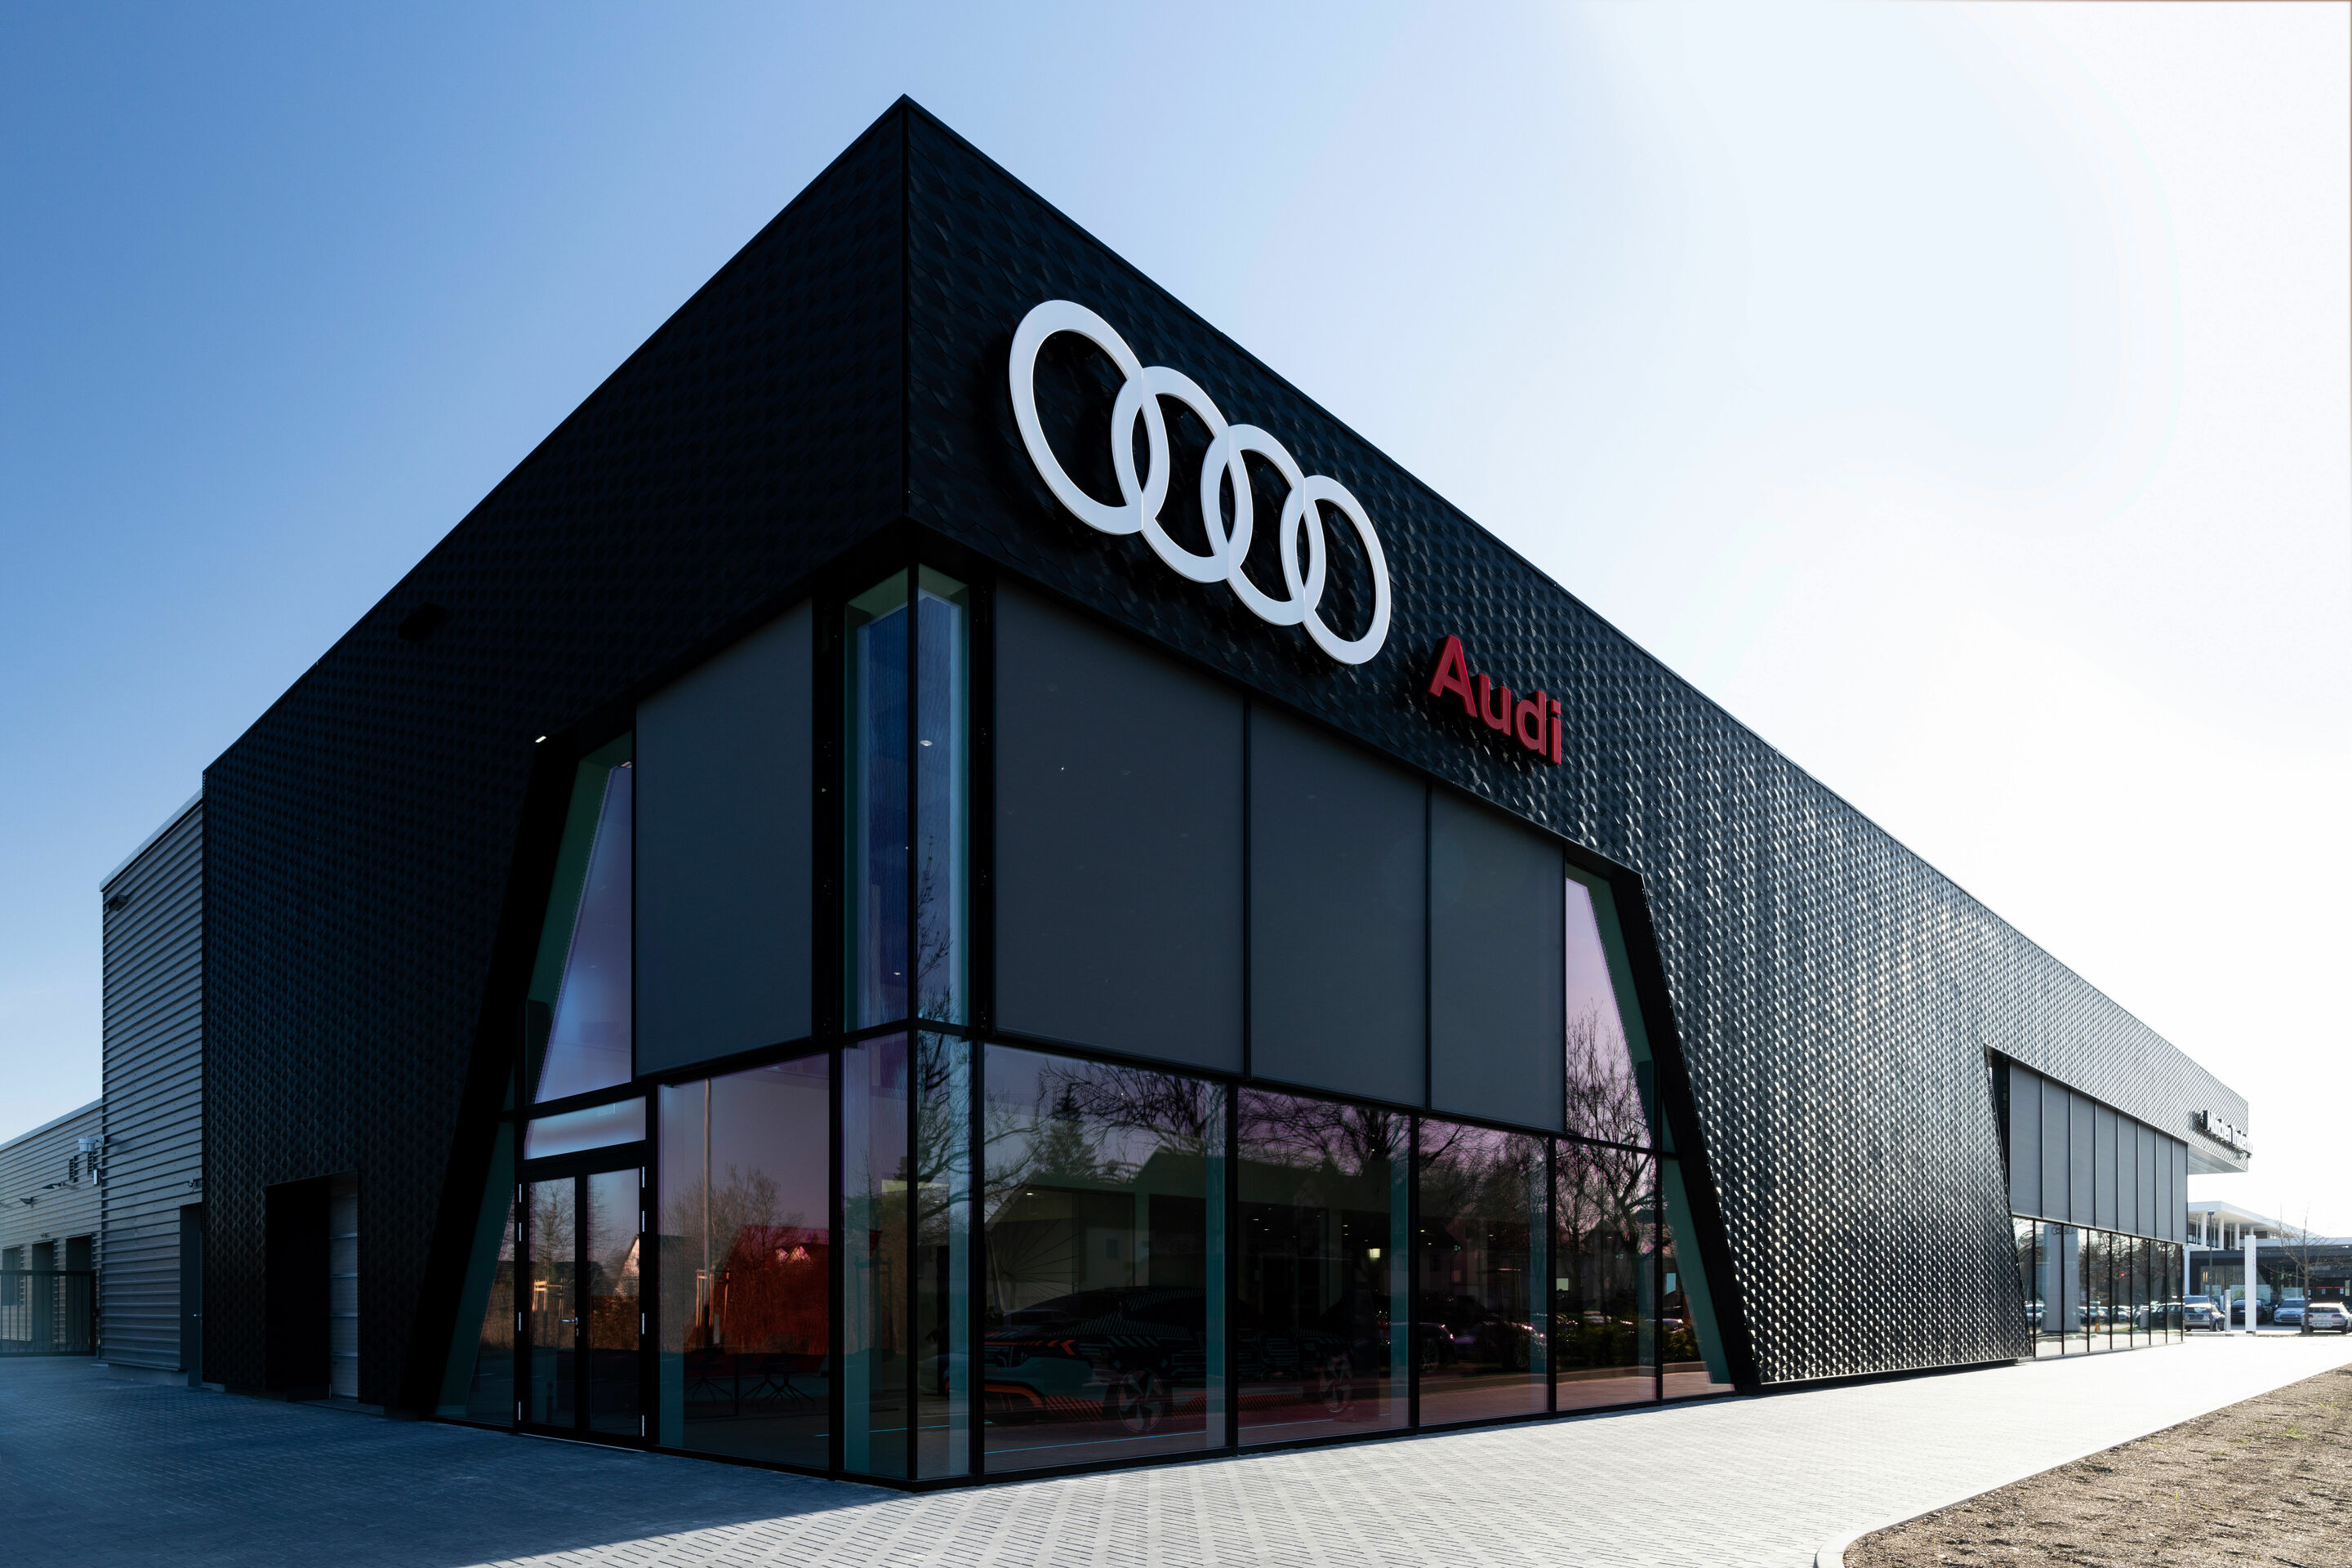 Audi Accessories & Merchandise, Car Accessories NI, Interior, Exterior